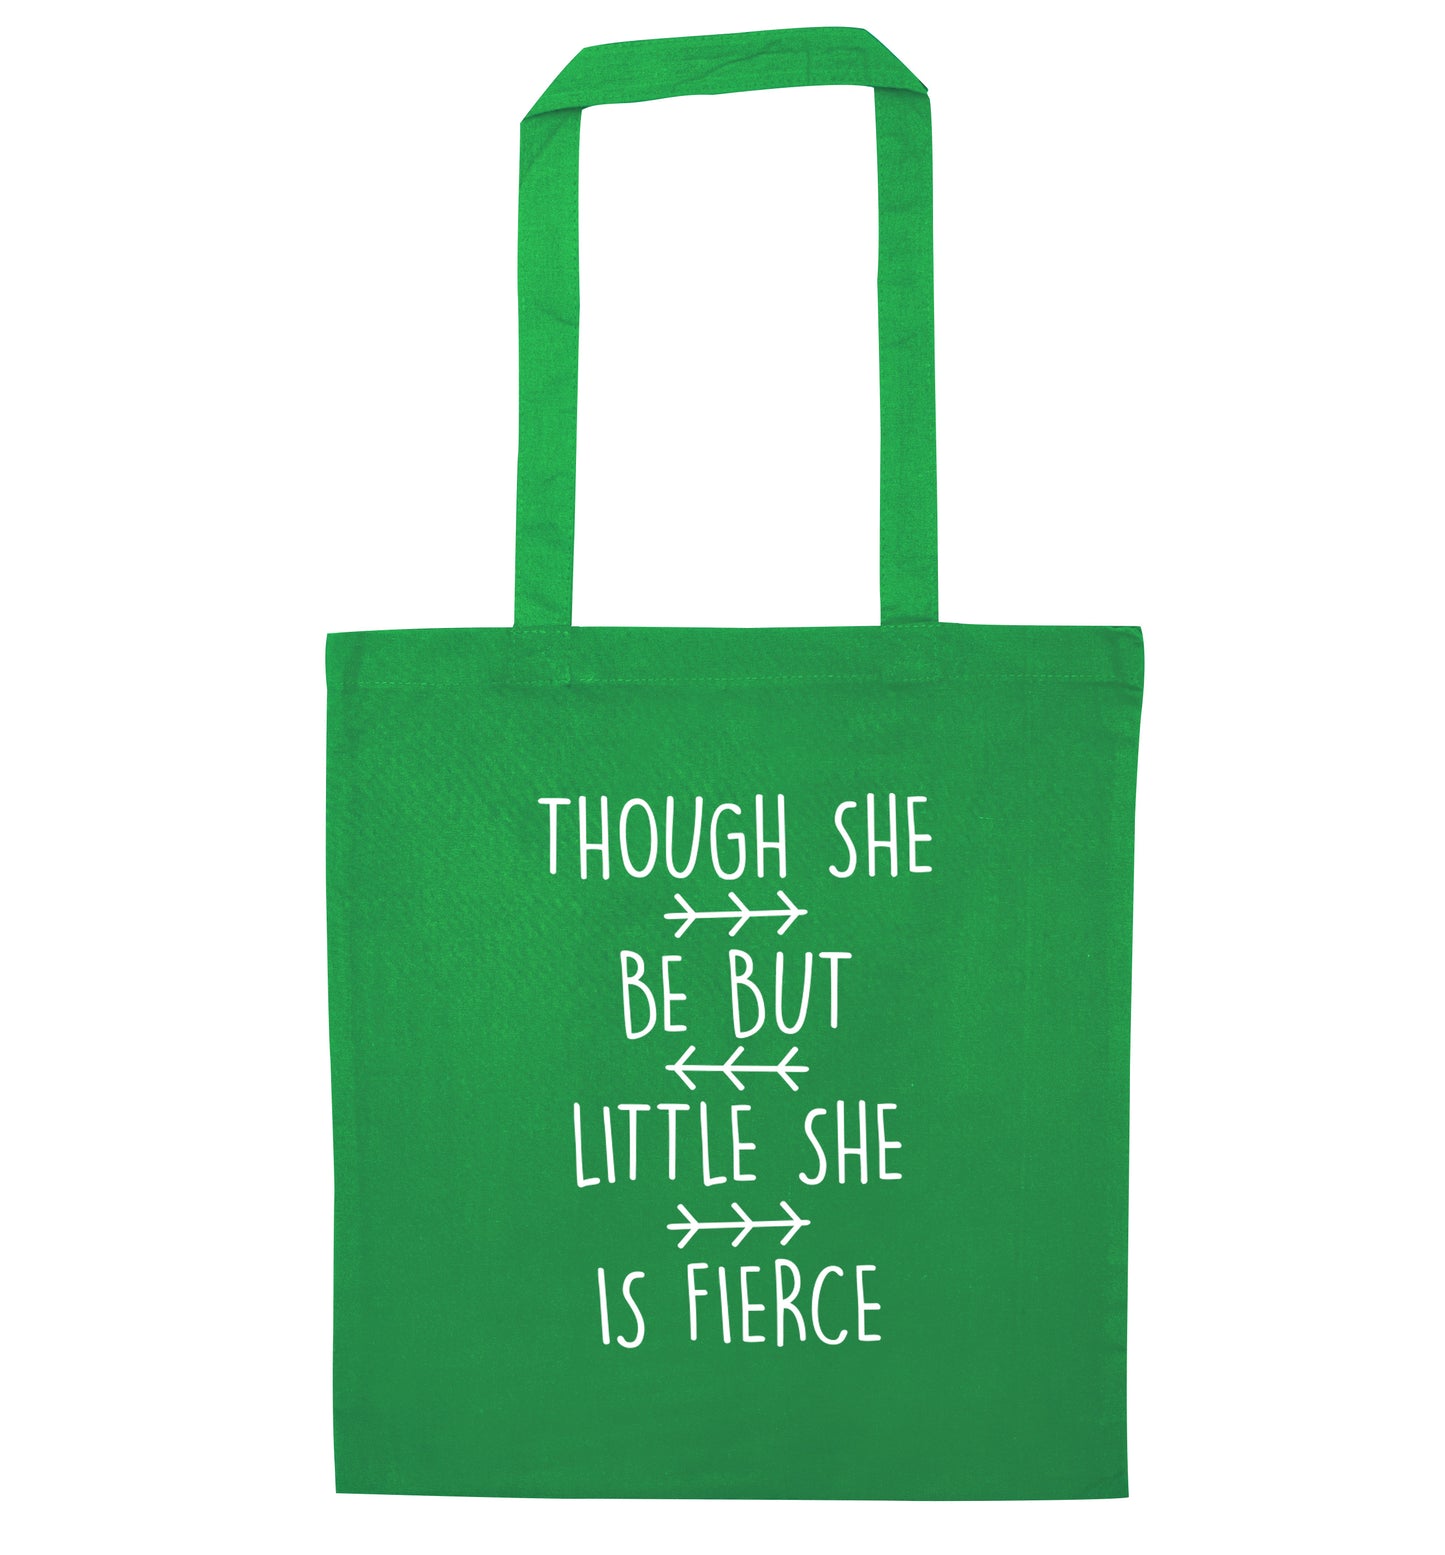 Though she be little she be fierce green tote bag